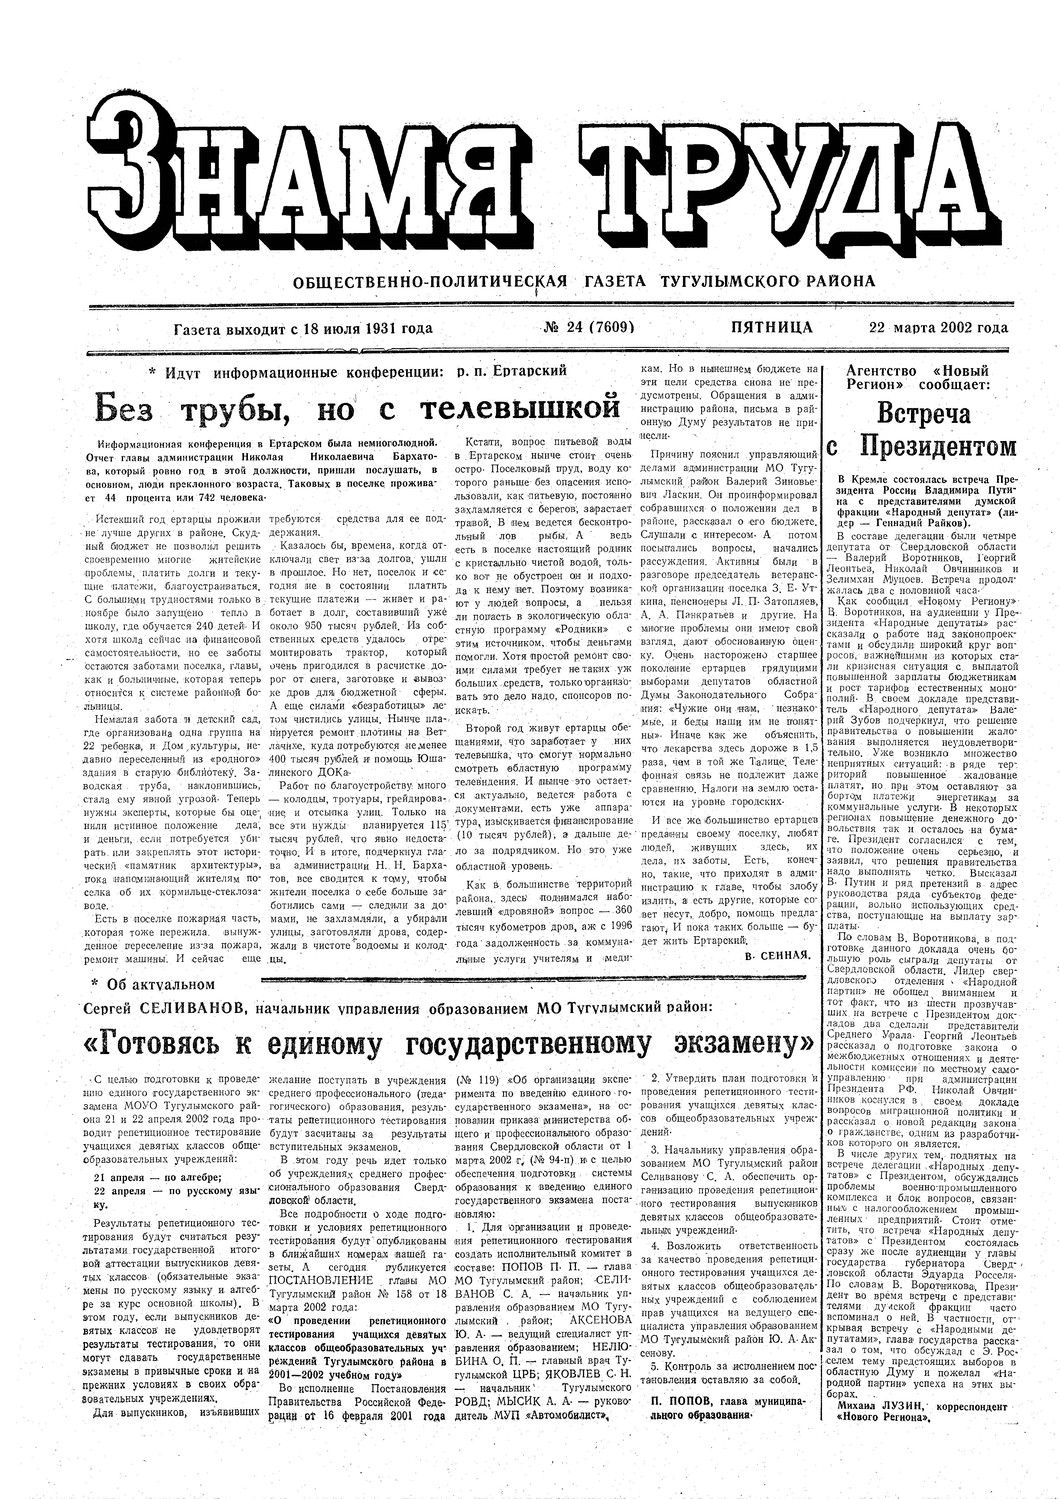 Знамя труда №24 от 22 марта 2002г.